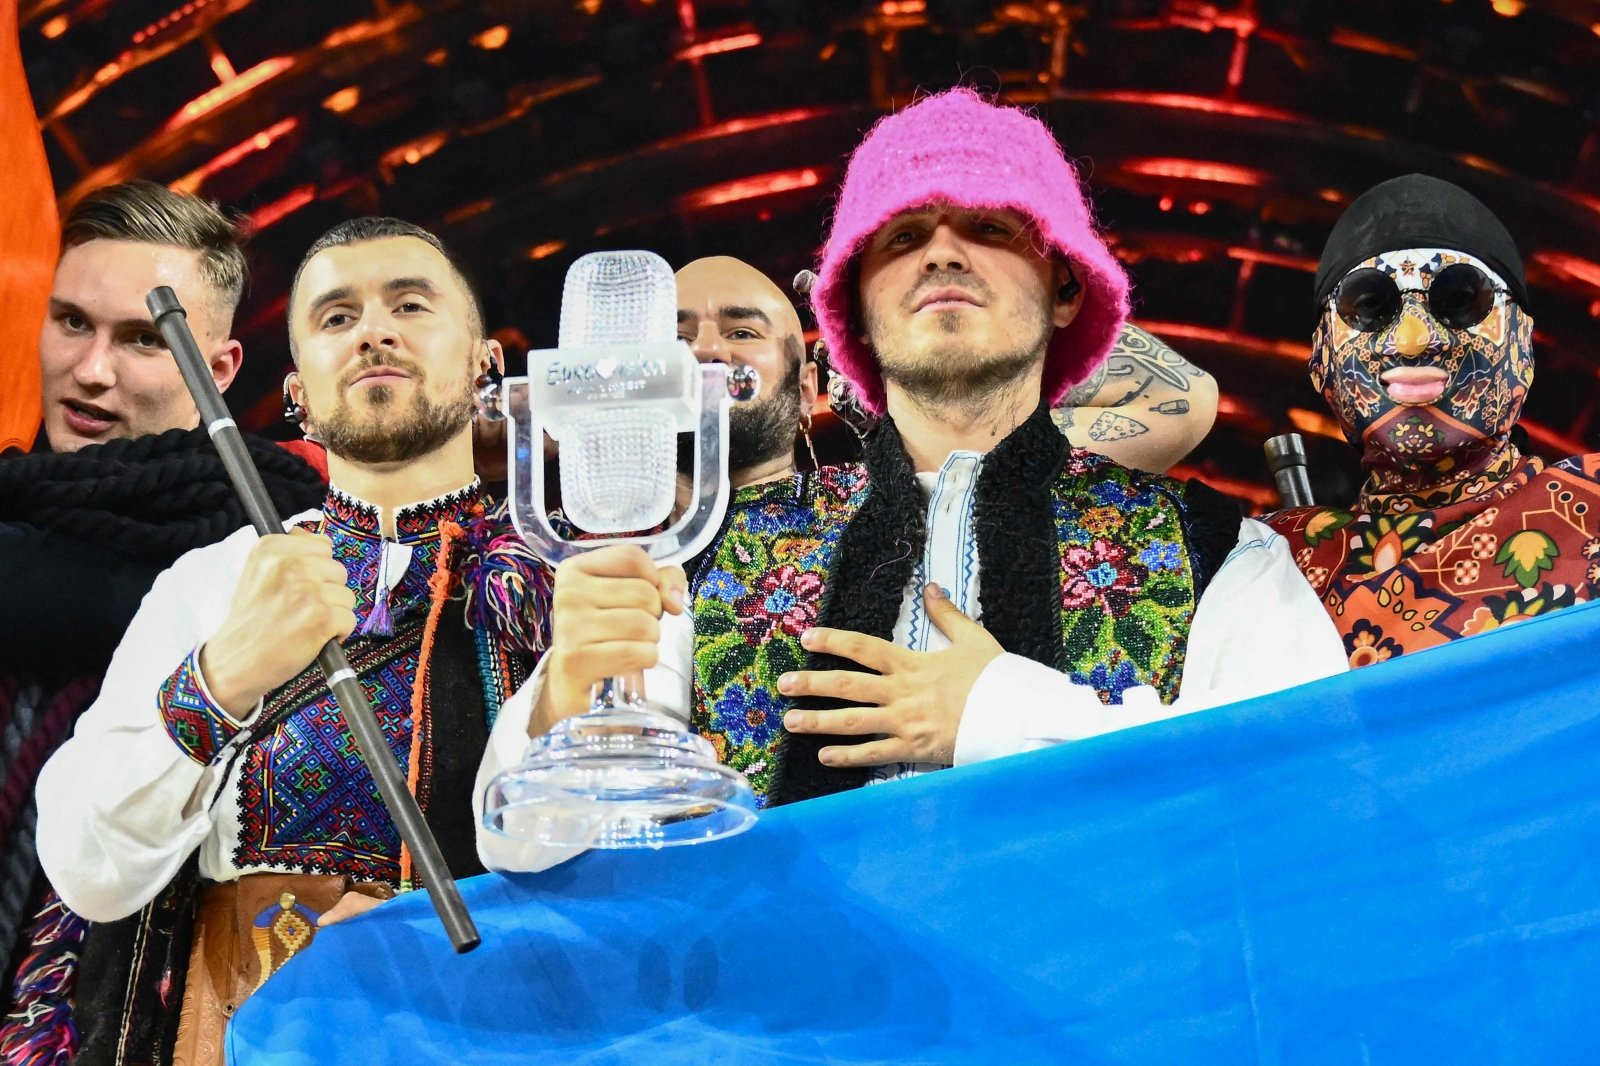 El grupo Kalush Orchestra vendió la copa de los ganadores de Eurovisión por $ 900 mil: este dinero se utilizará para comprar un complejo UAV PD-2 para el ejército ucraniano